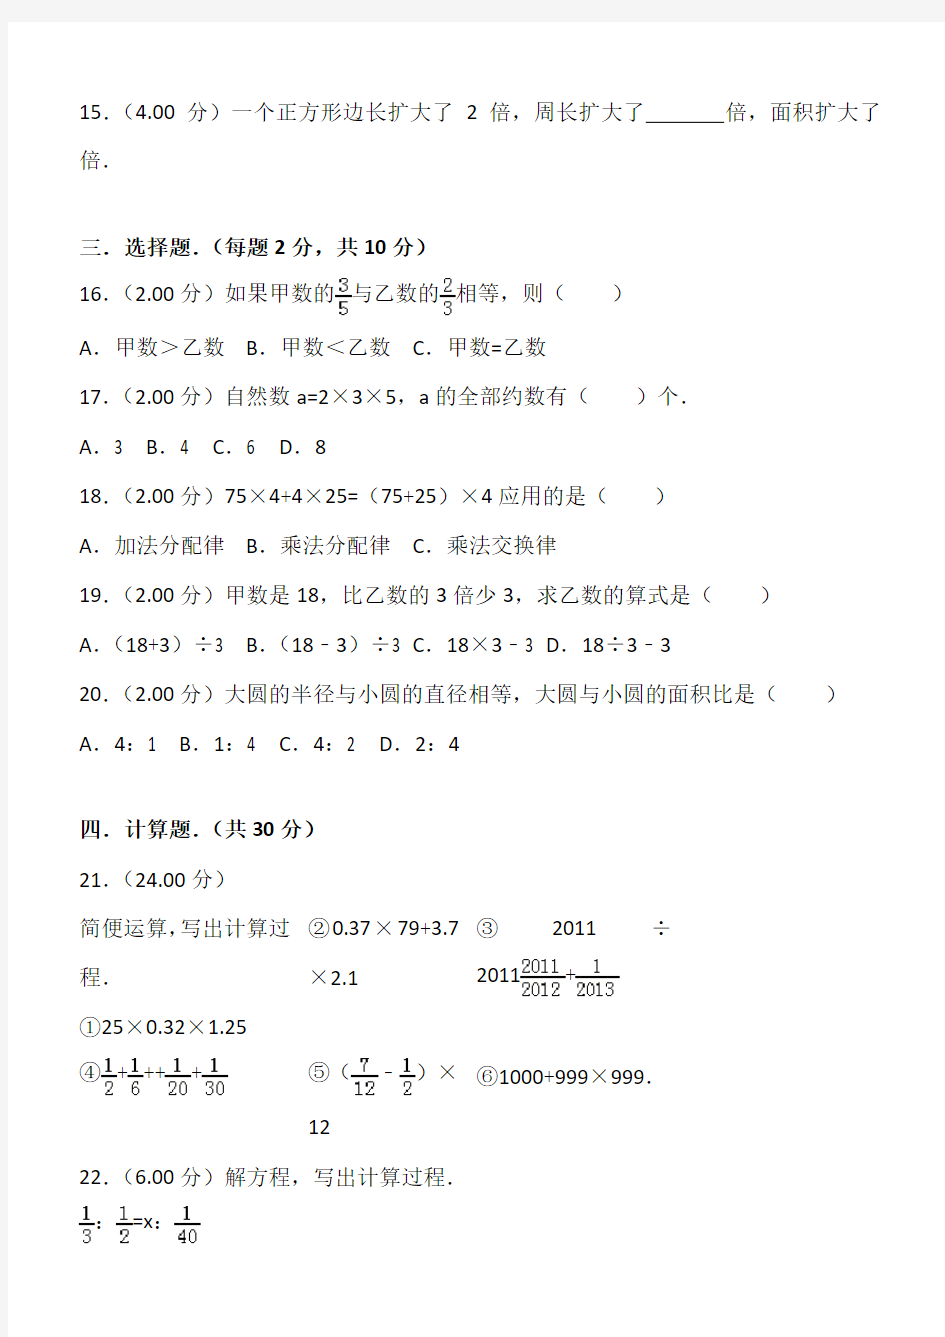 (完整版)2018年邯郸市某中学小升初数学试卷